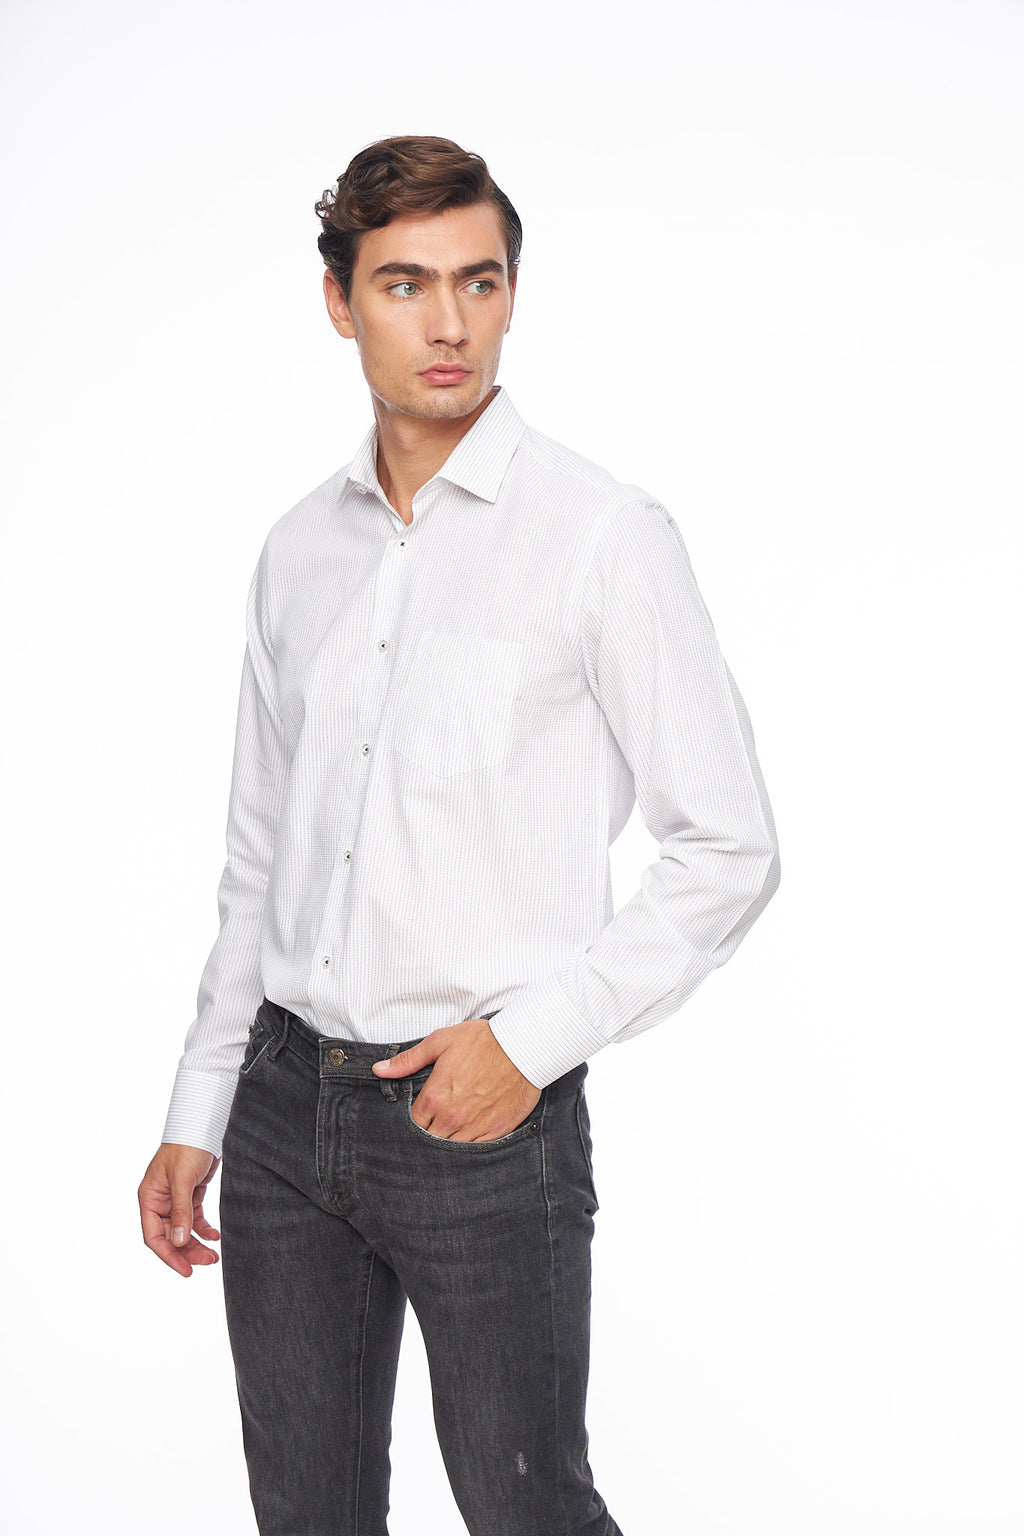 Мъжка бяла риза, райе бордо, права конструкция с джоб на гърдите. 